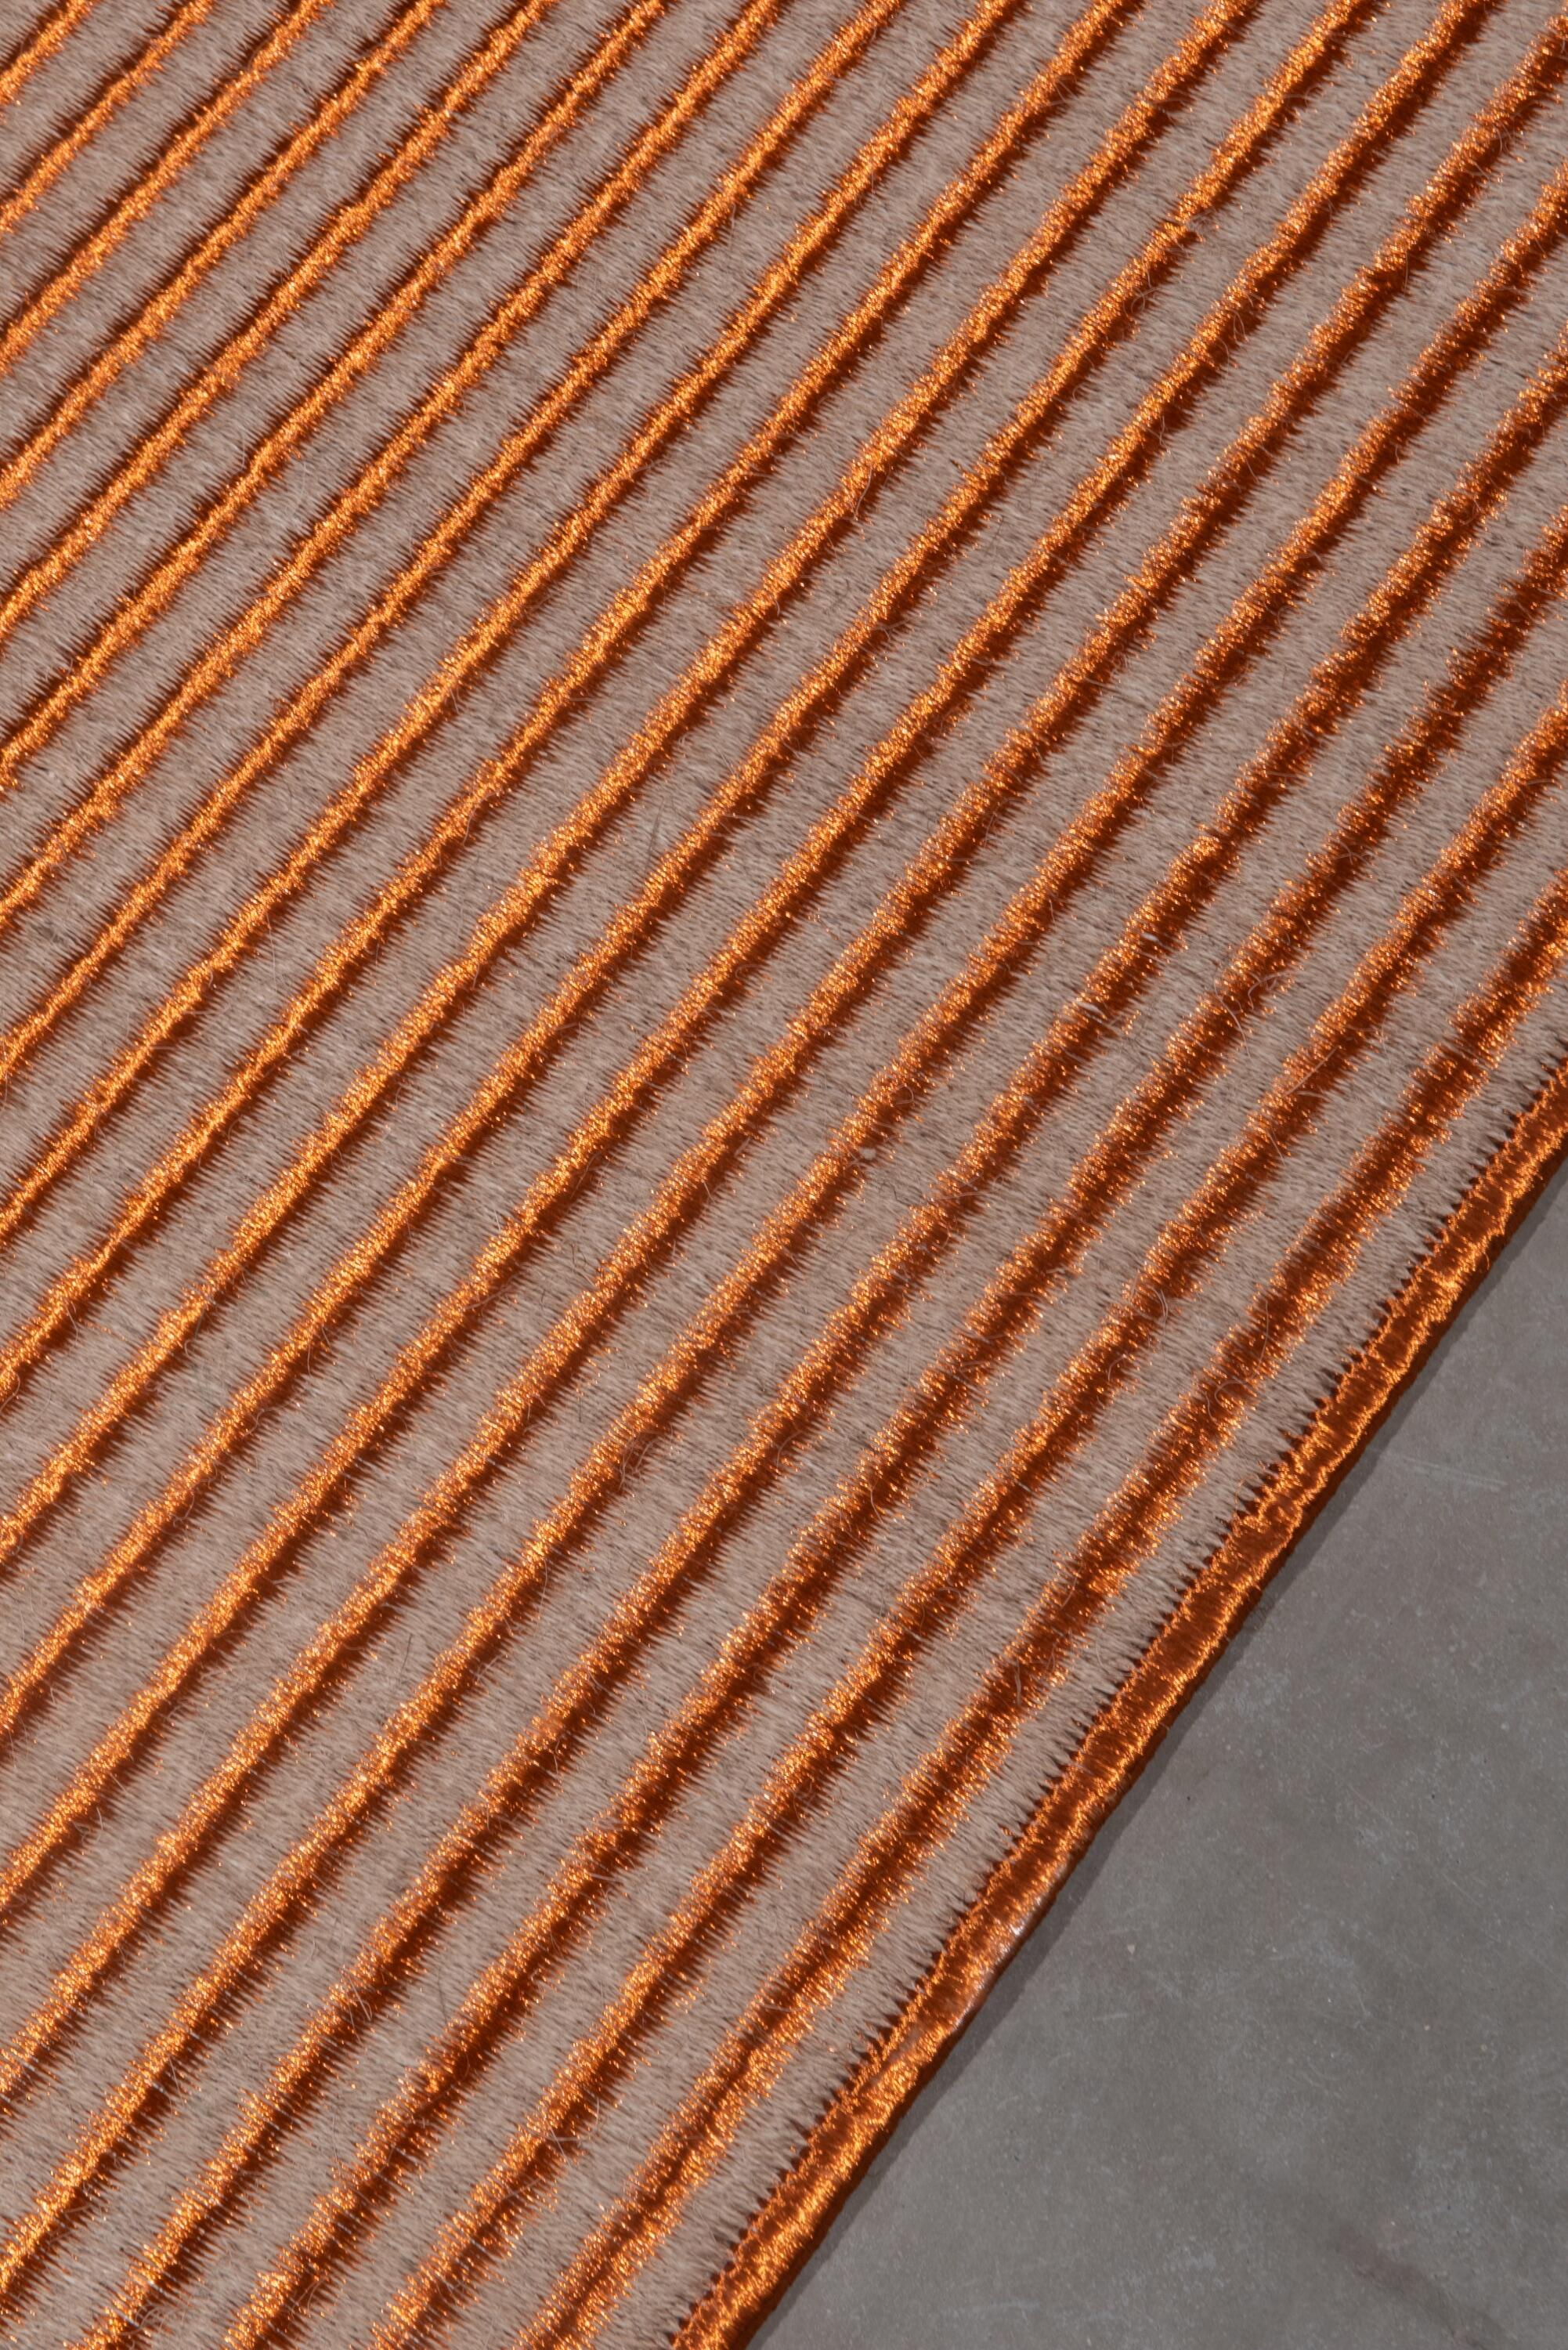 Stripes Weave, Natural Fique, Copper